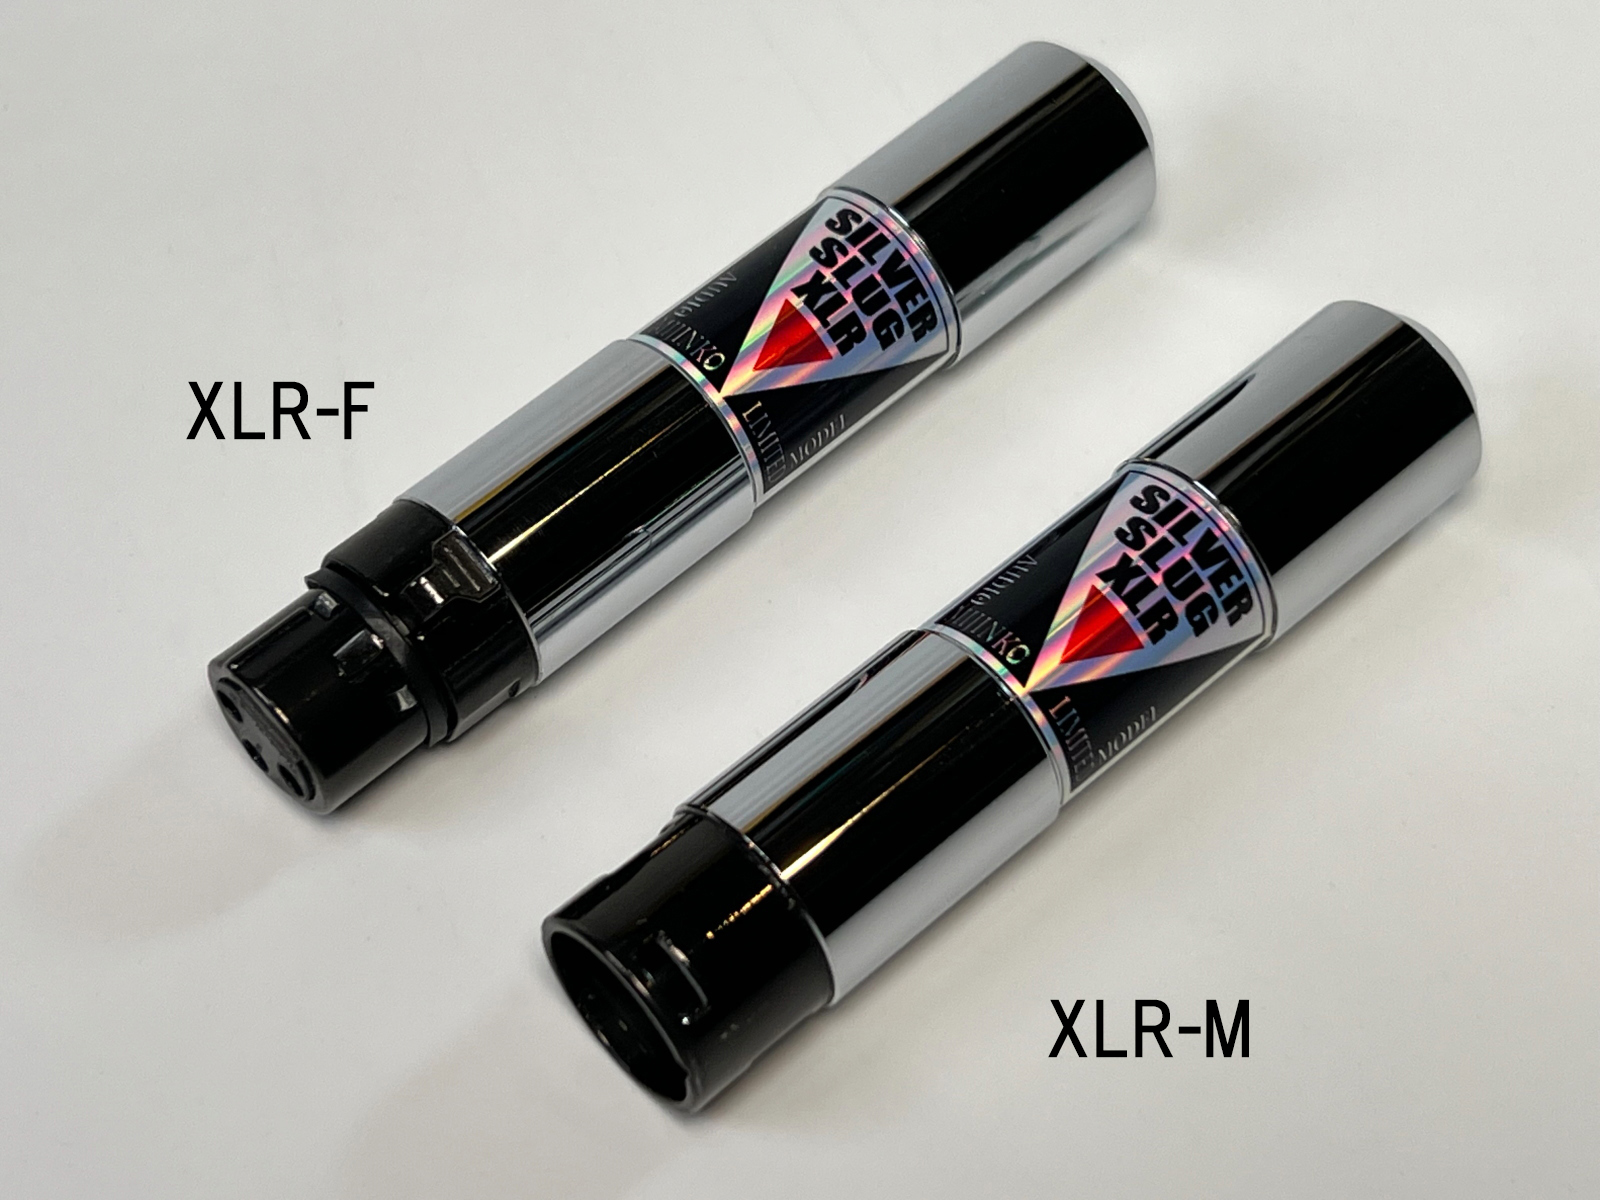 オーディオみじんこ SILVER SLUG XLR-M 仮想アース既に販売終了となったモデルです